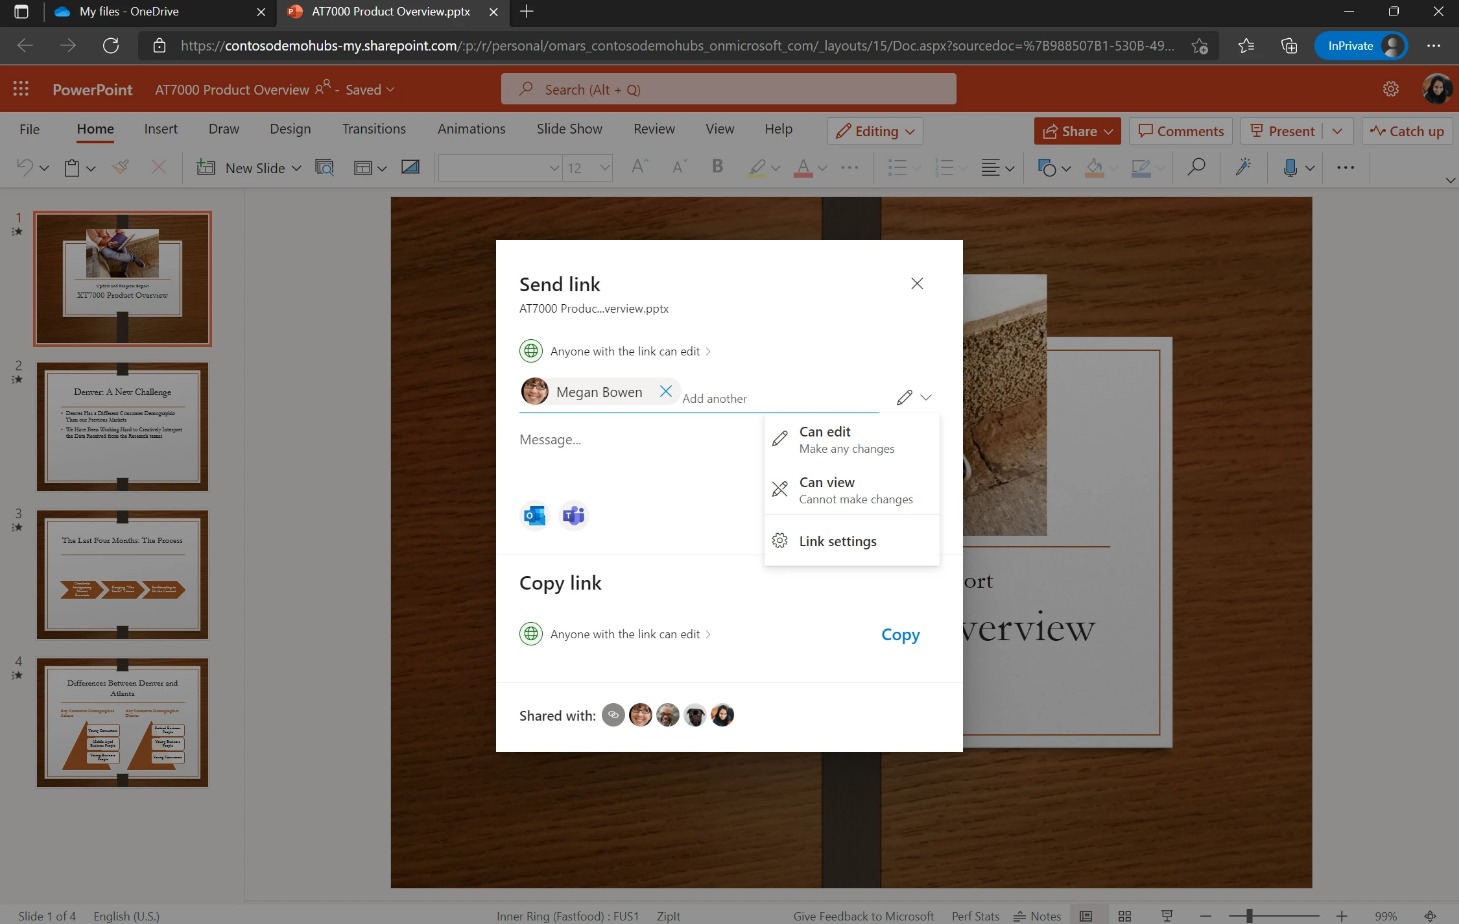 Experiencia de uso compartido de PowerPoint consistente con la de OneDrive.